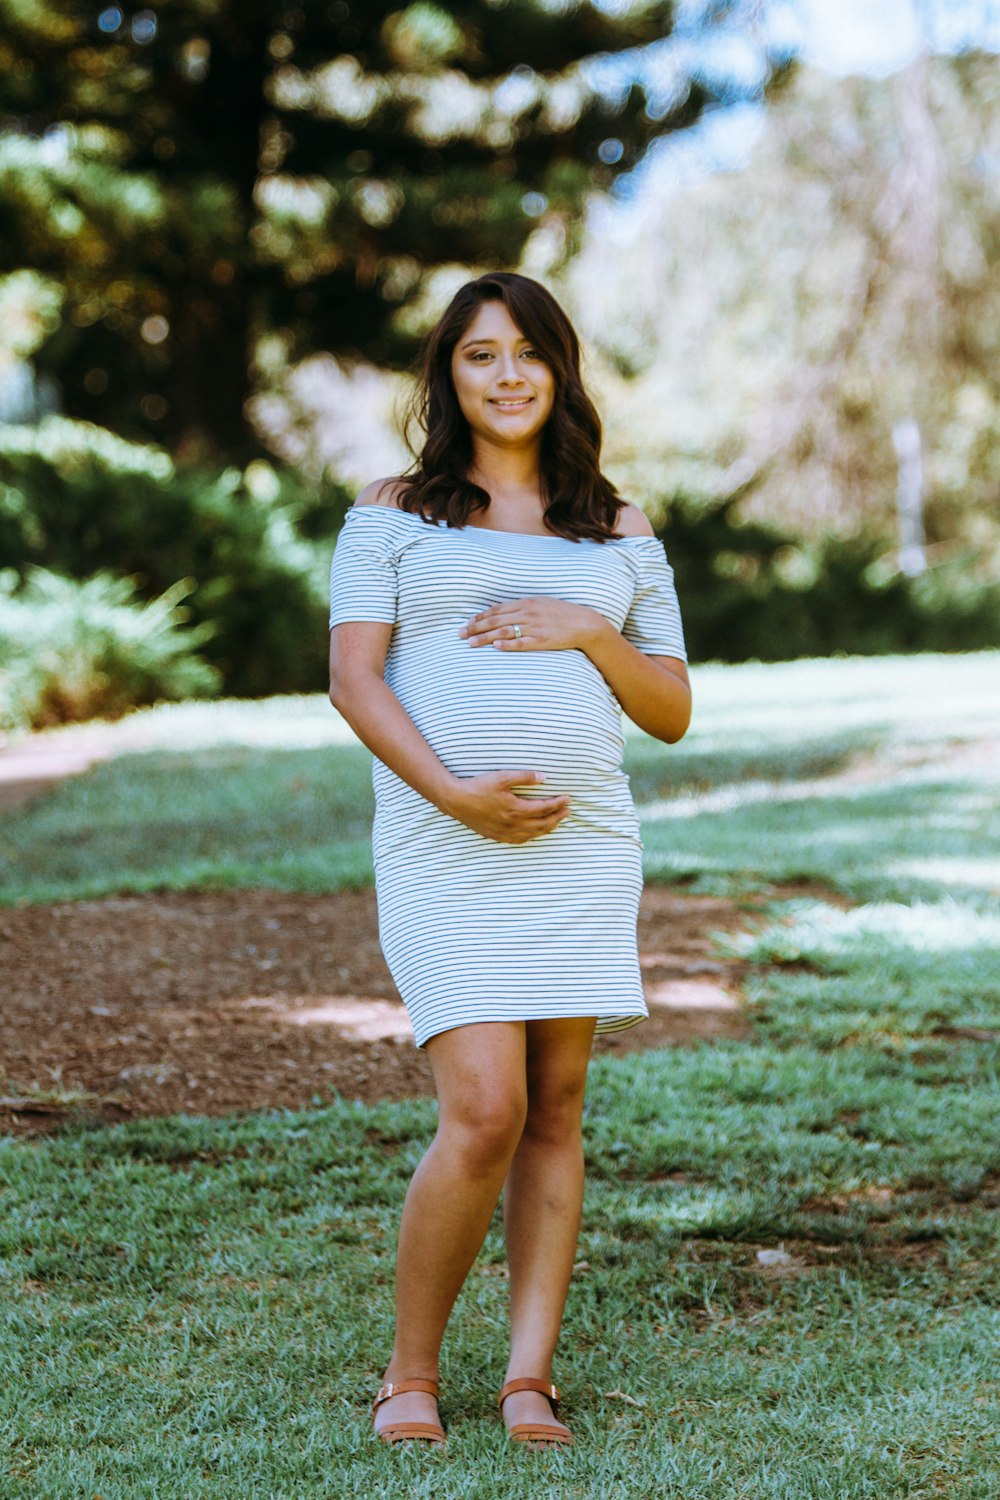 Fotografía de maternidad de mujer en mini vestido de hombros descubiertos a rayas blancas y azules de pie sobre hierba verde